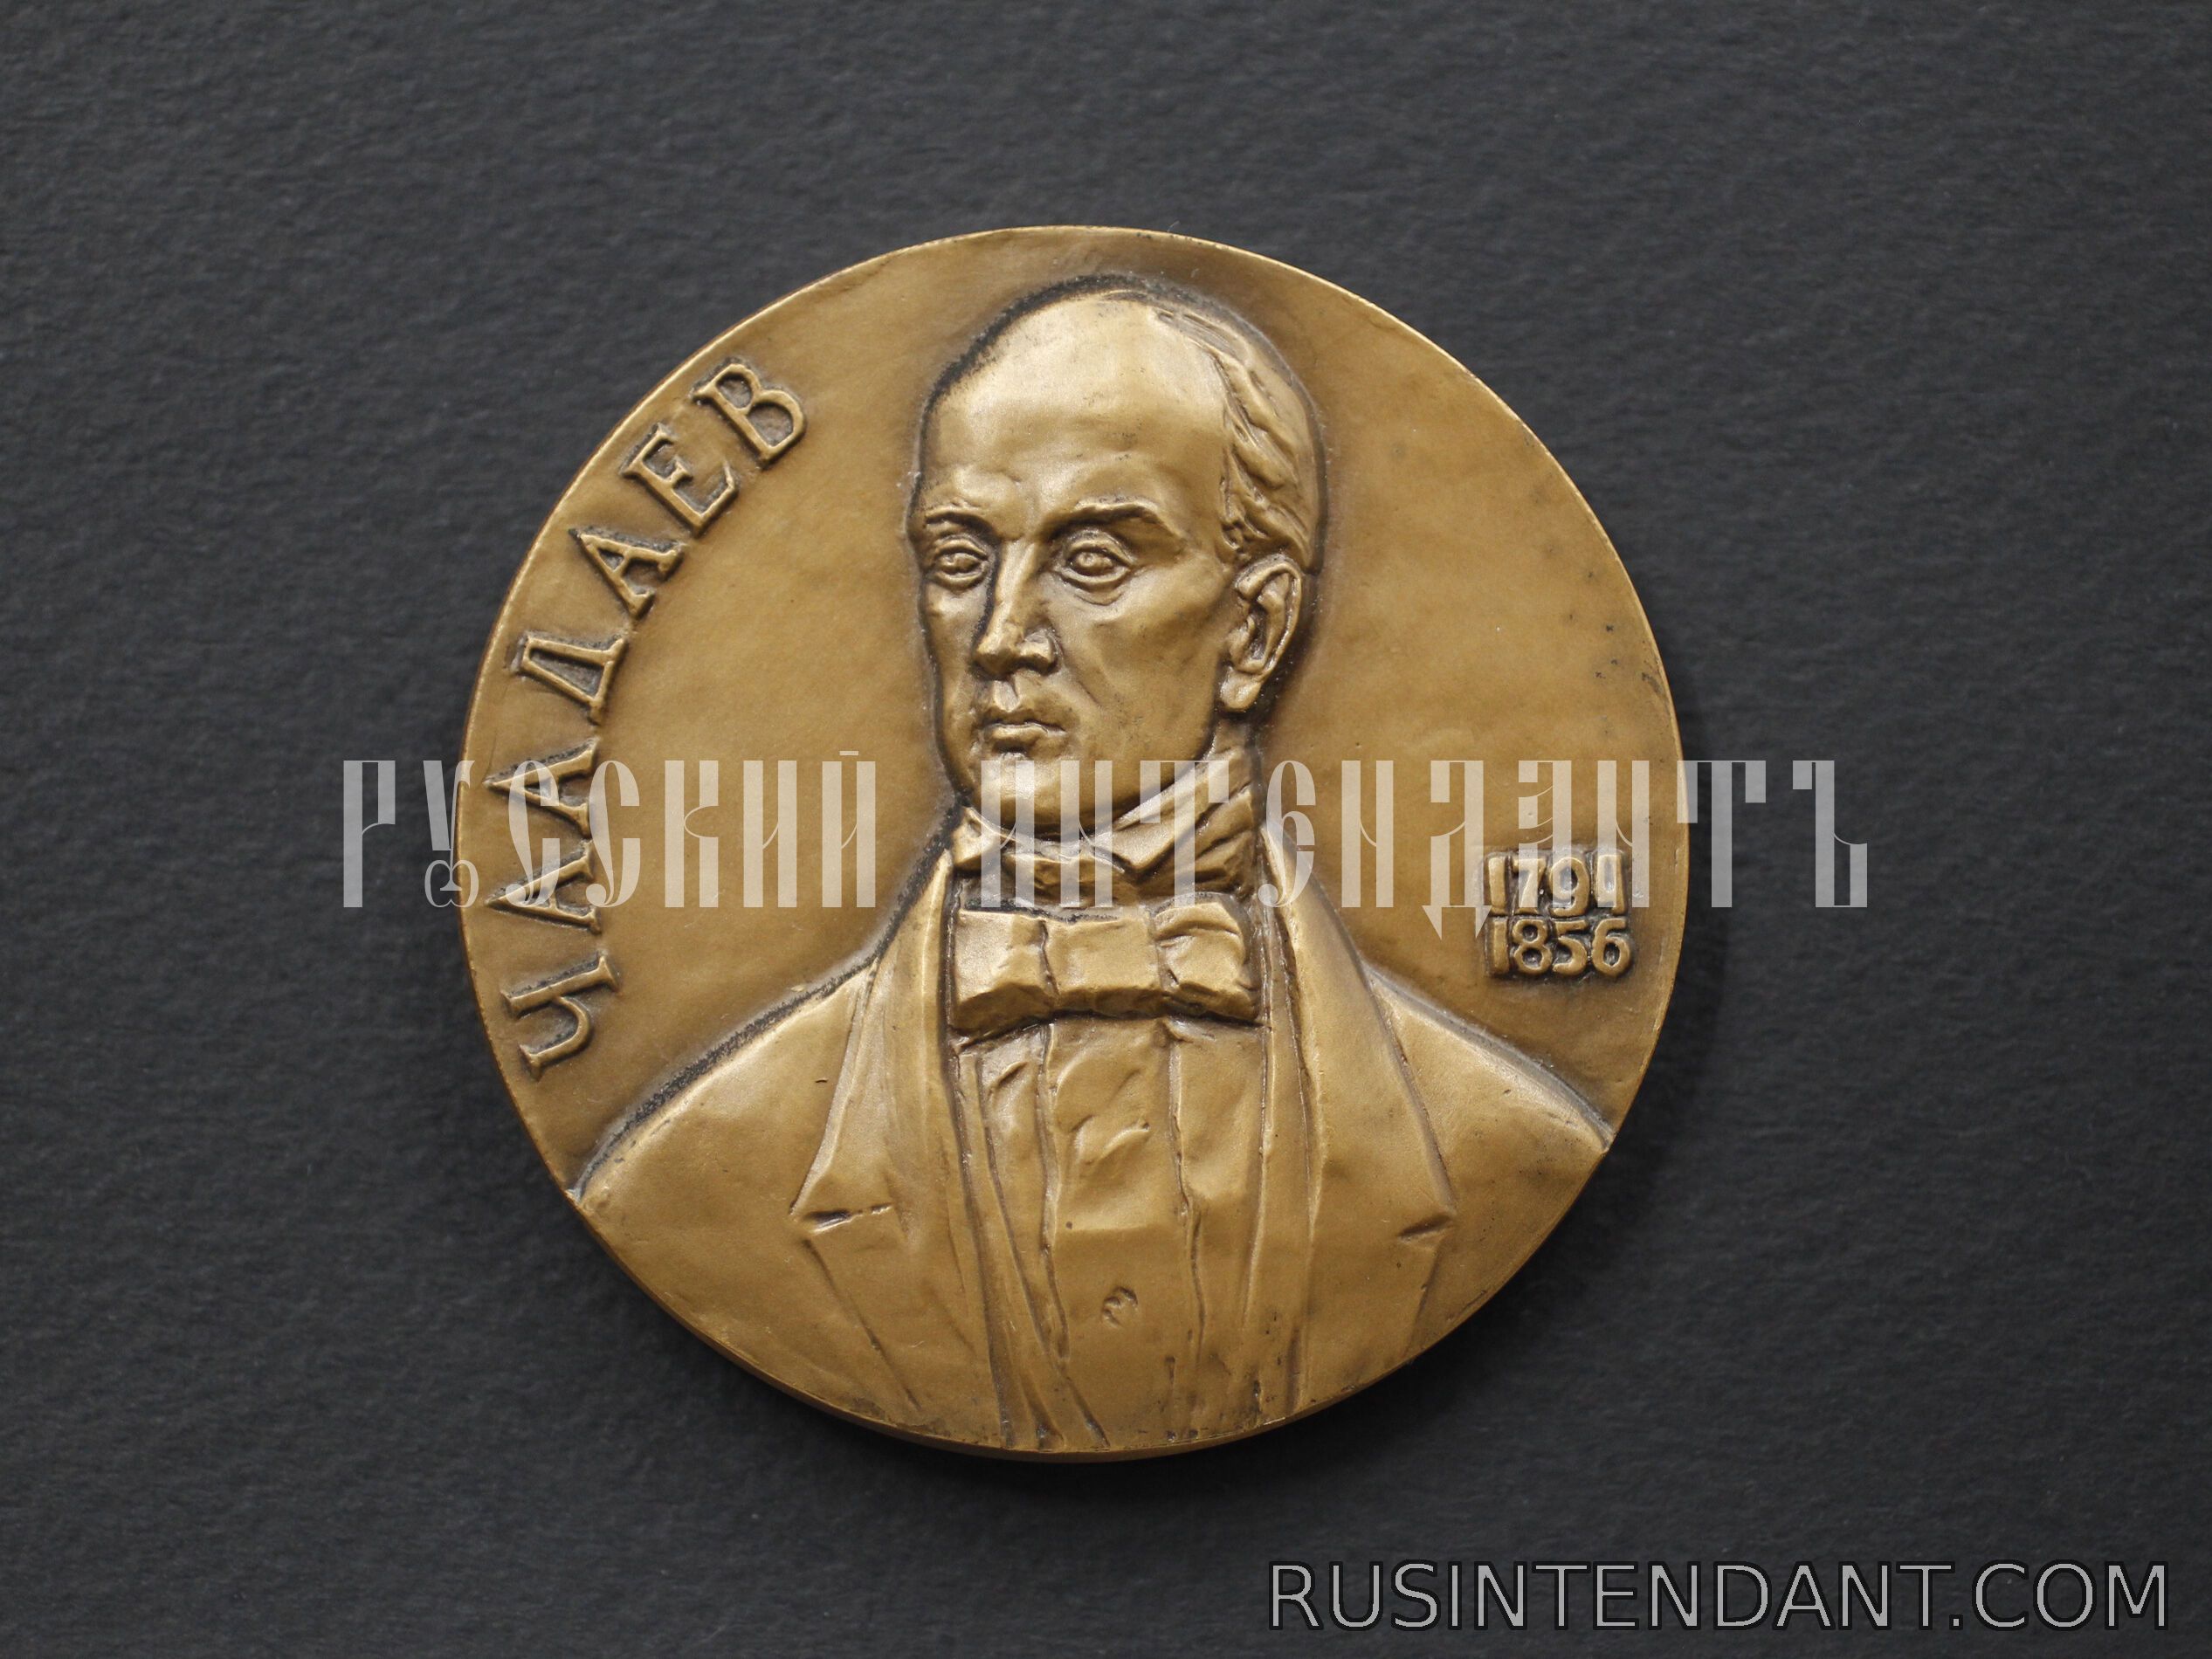 Фото 1: Настольная медаль «Чаадаев 1794-1856» 